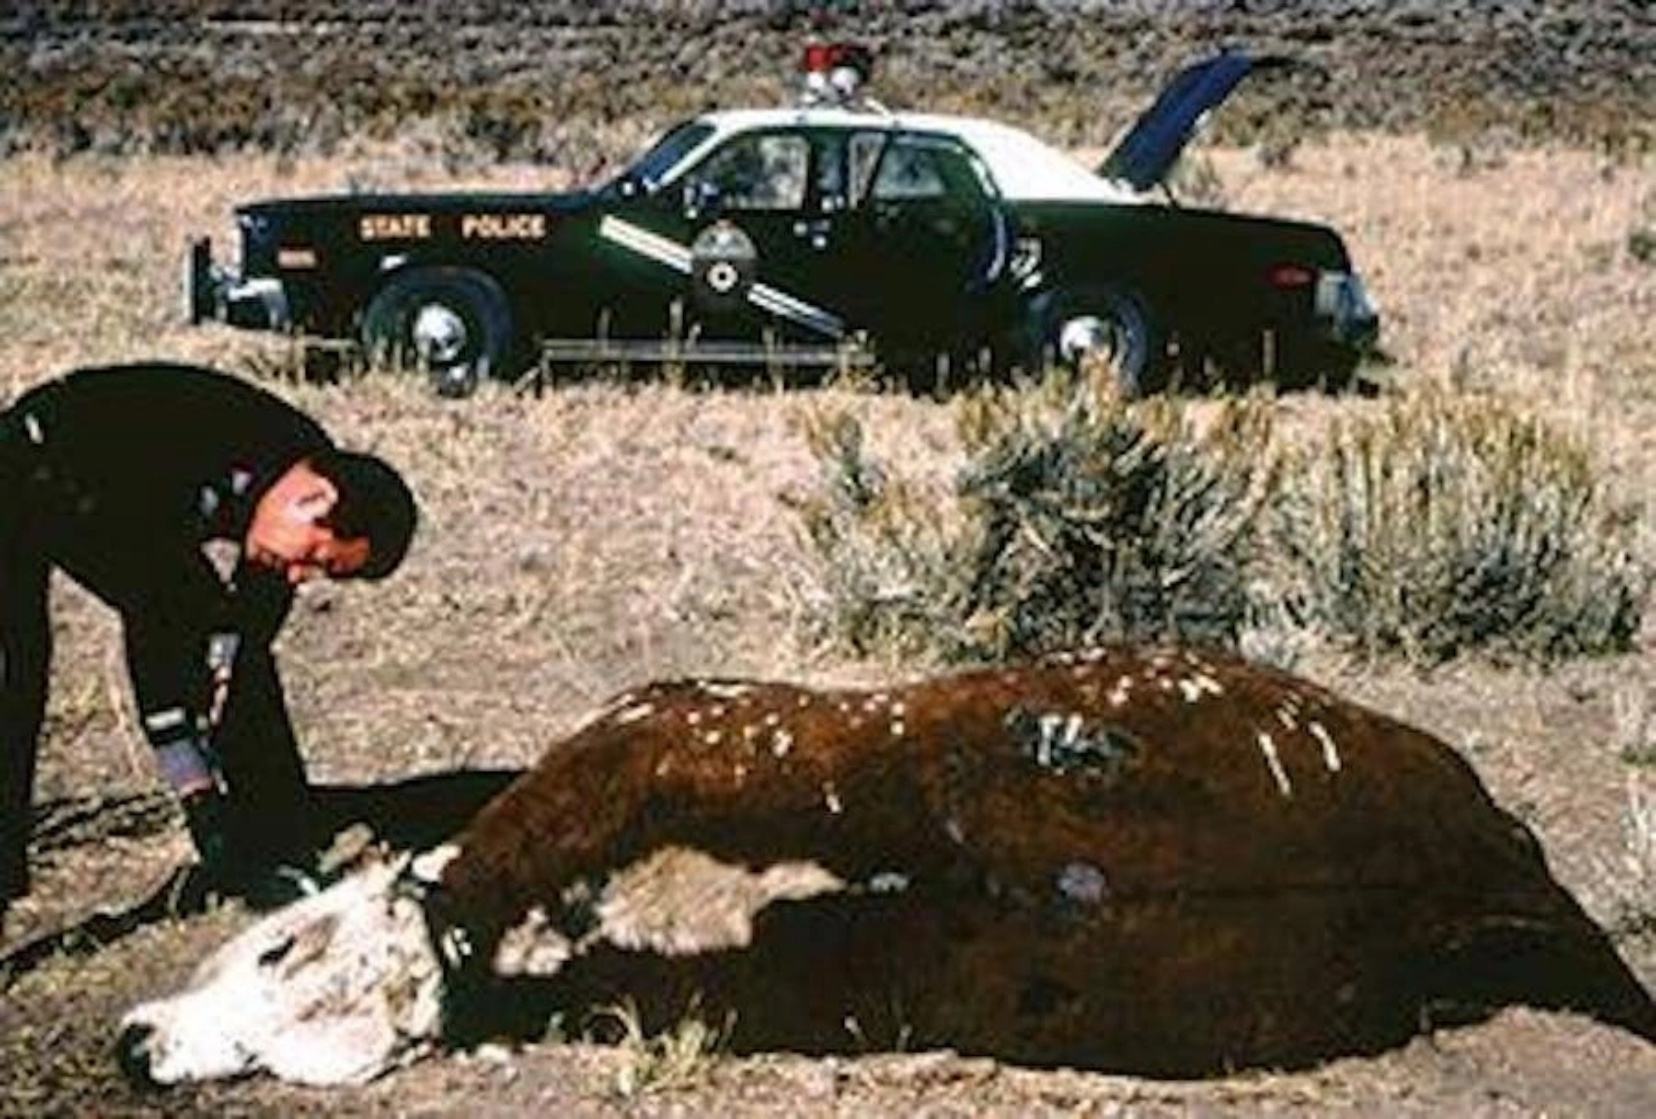 Gabe Valdez, một cựu lính Cảnh sát bang New Mexico, tuyên bố tìm thấy một con bò bị cắt xẻo với một sinh vật lạ bên trong